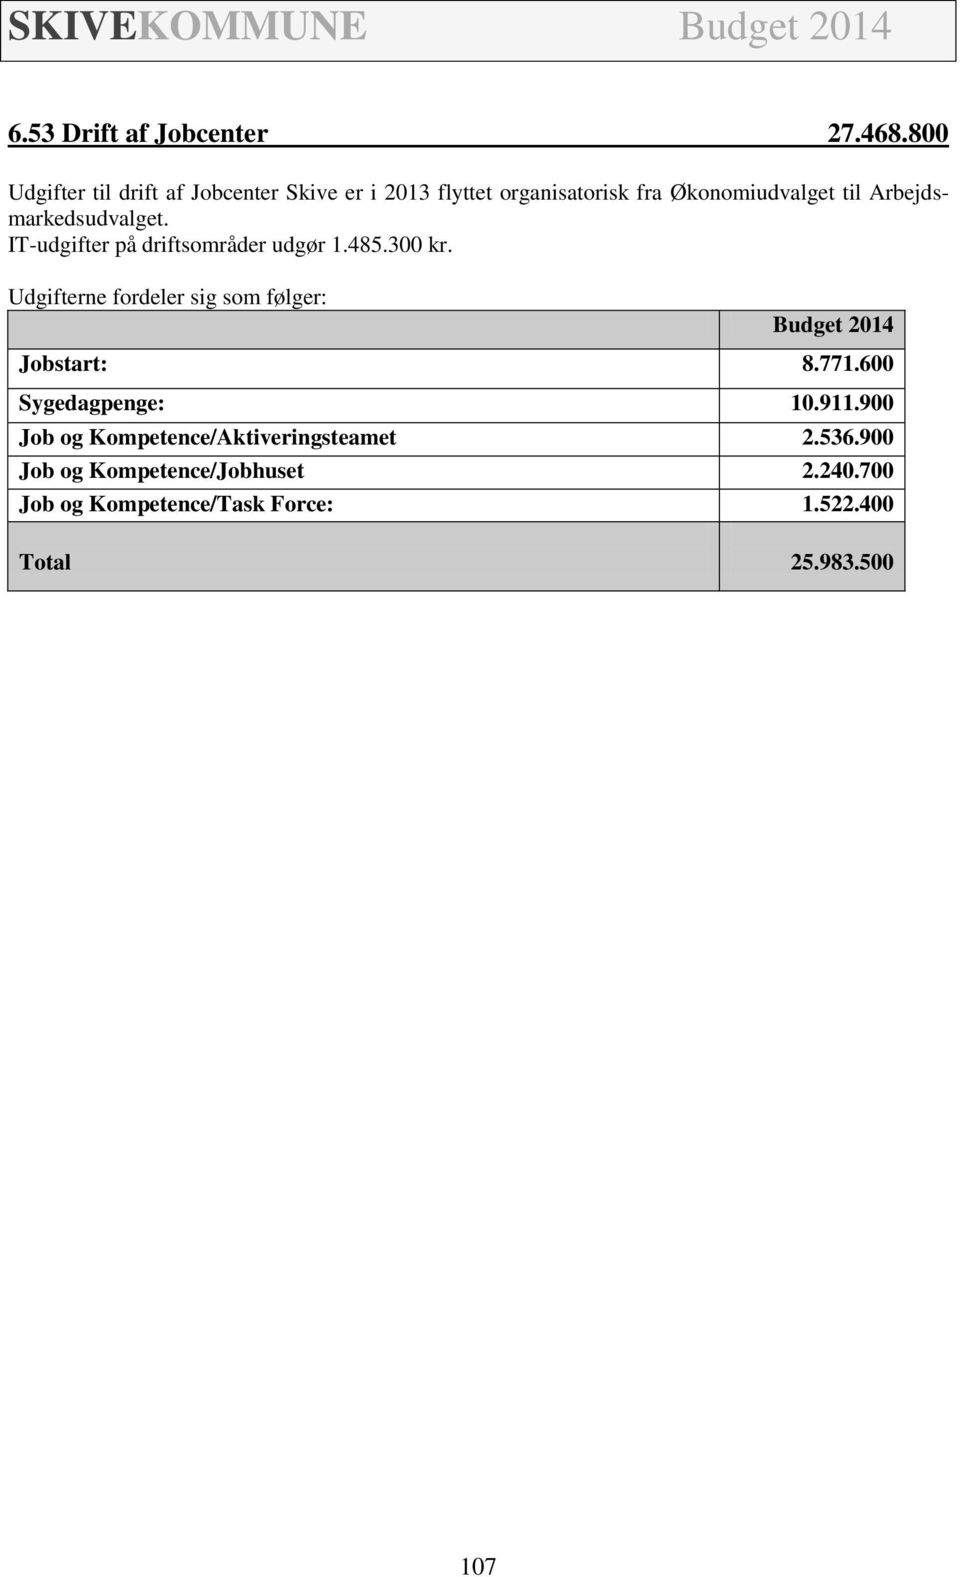 Arbejdsmarkedsudvalget. IT-udgifter på driftsområder udgør 1.485.300 kr.